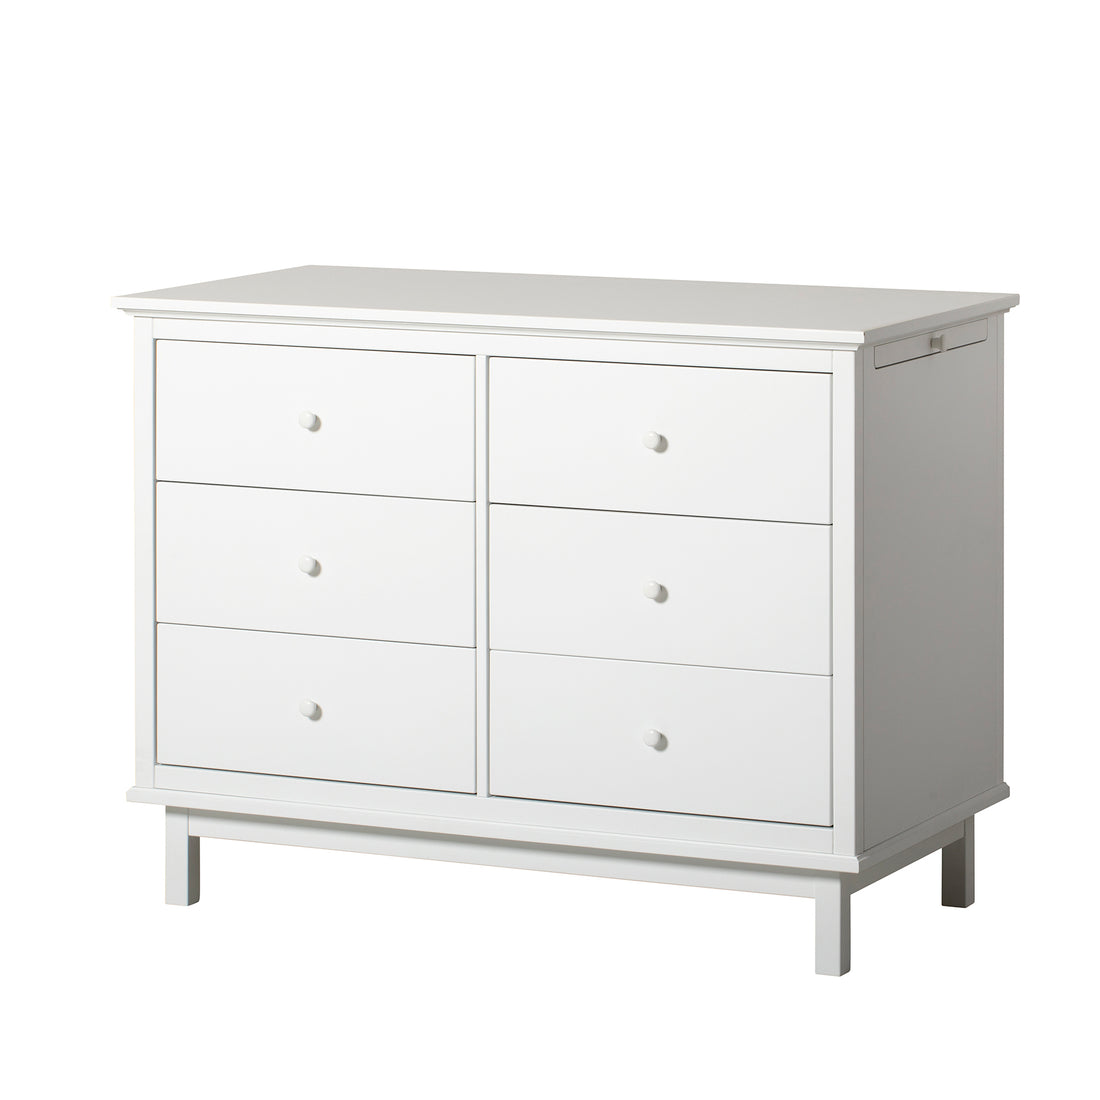 Oliver Furniture Seaside Dresser with 6 Drawers (Pre-Order; Est. Delivery in 6-10 Weeks)